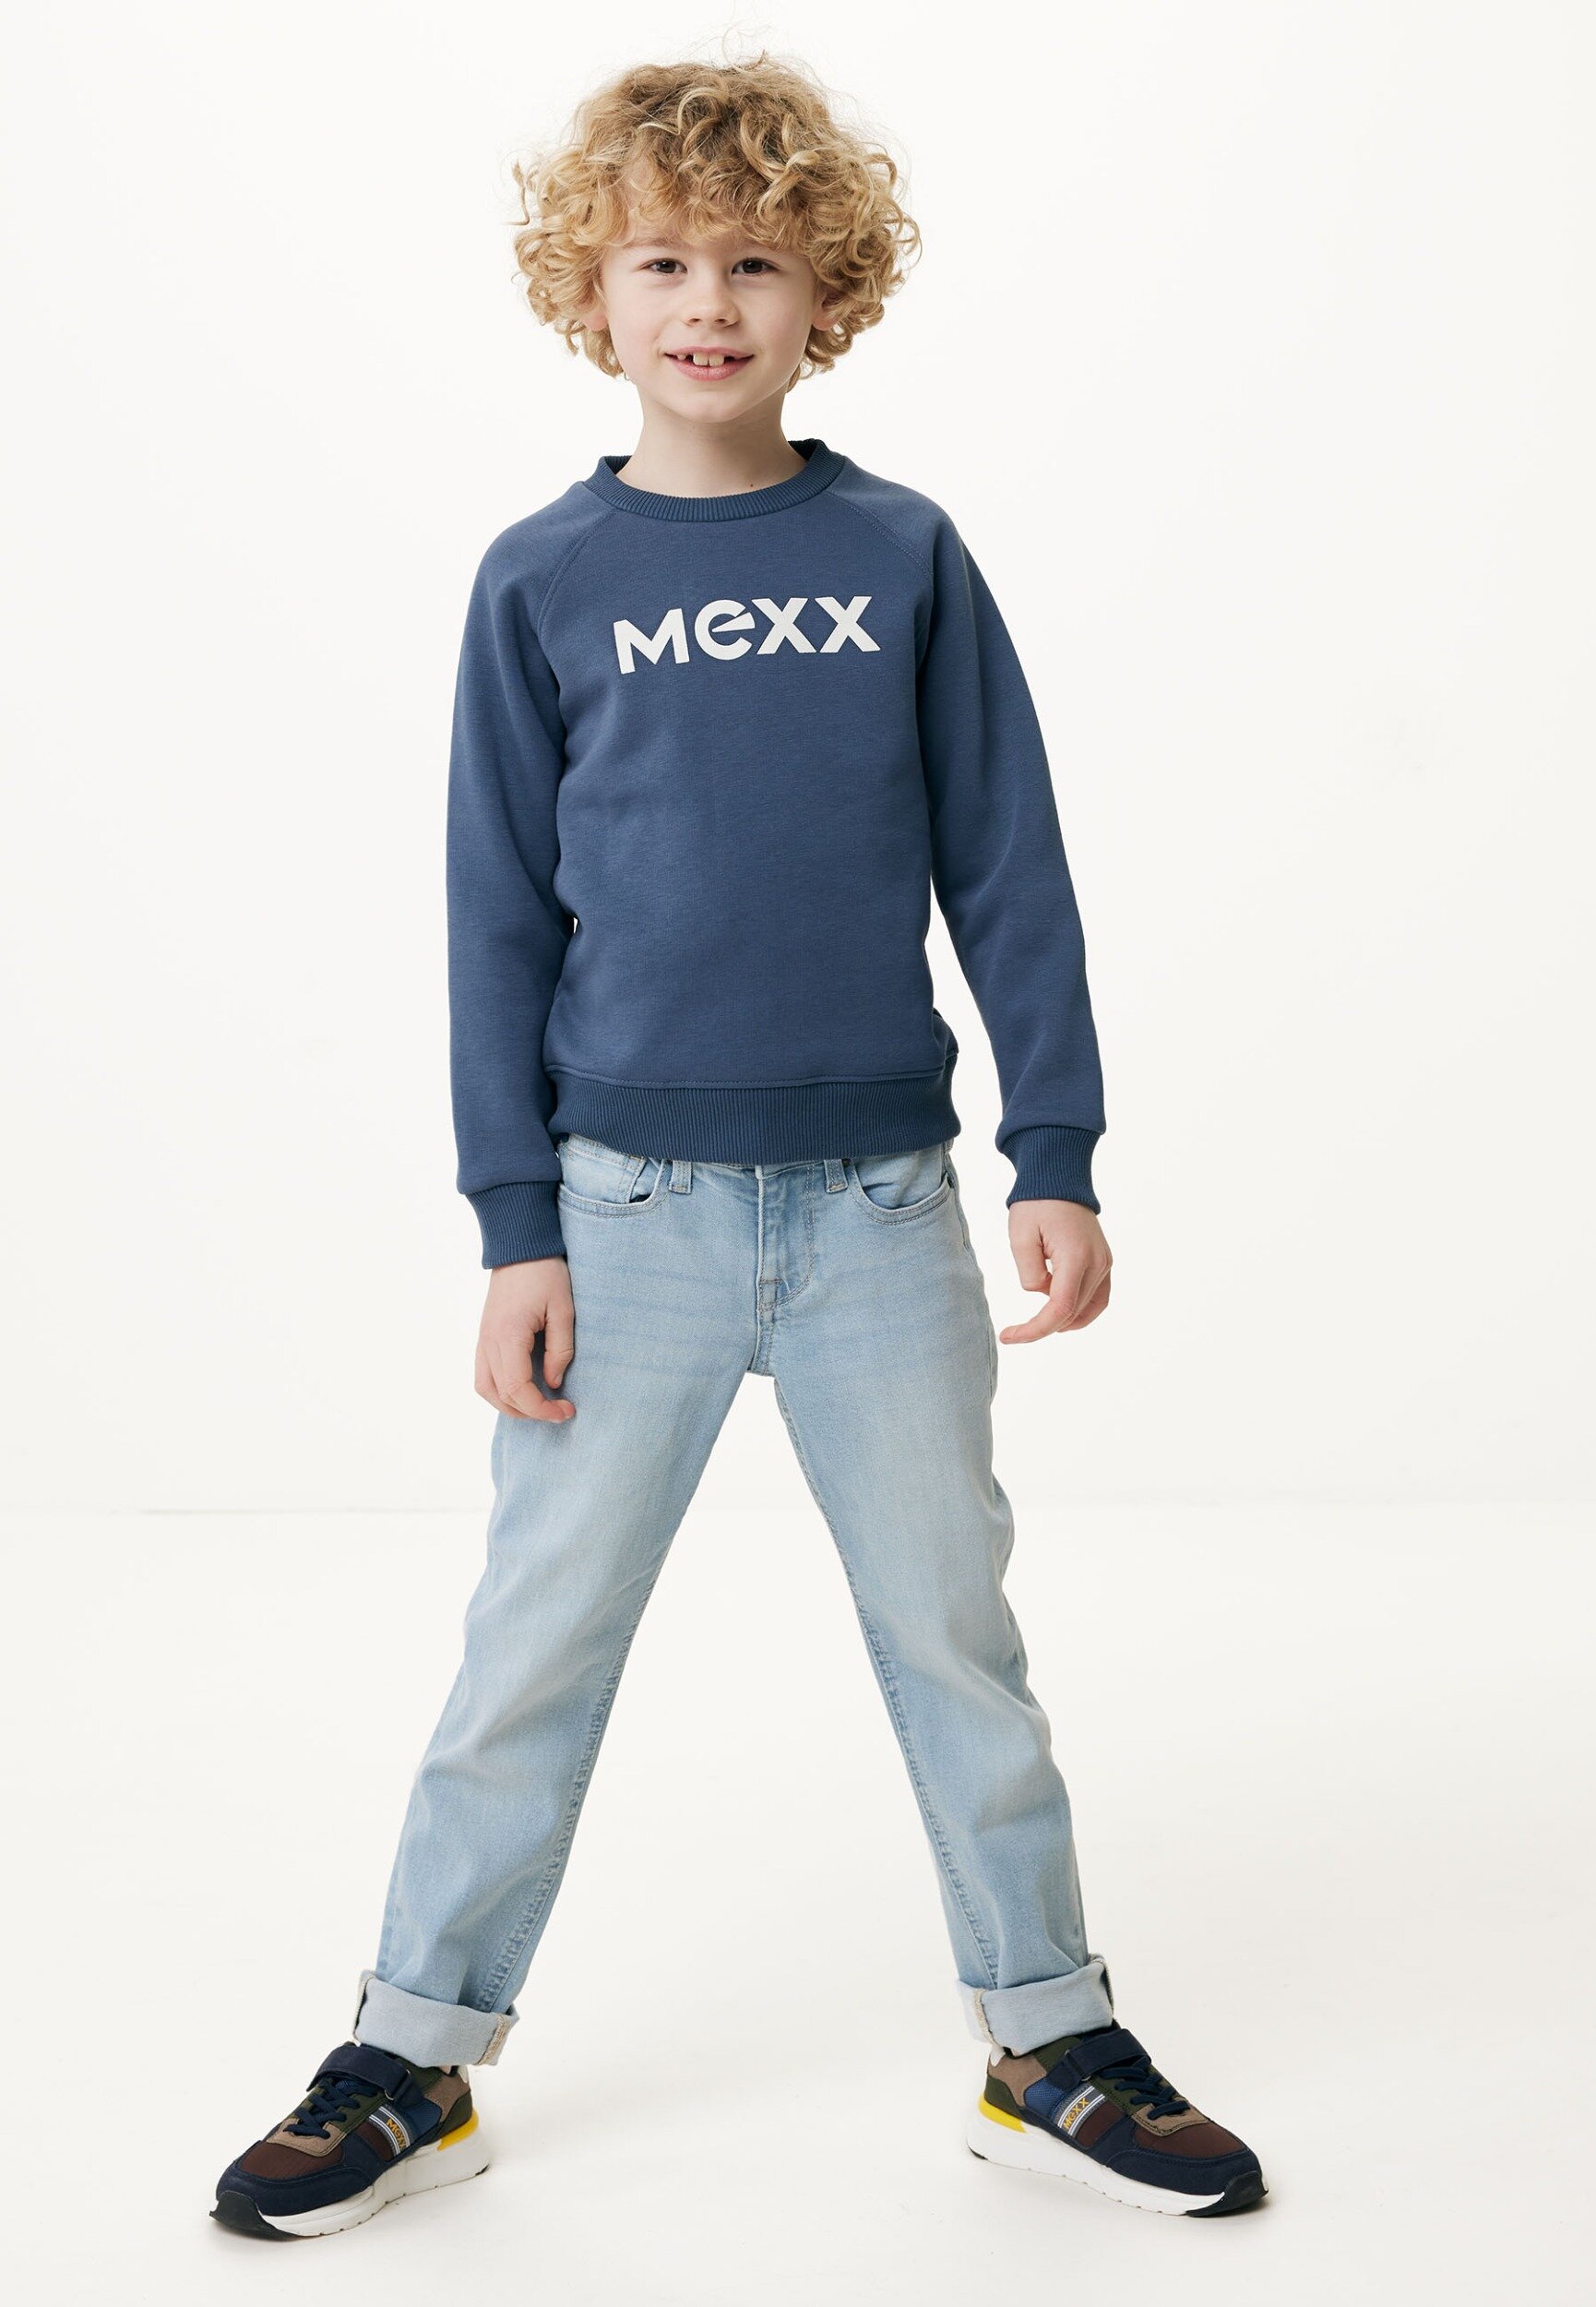 Crew neck sweater Light Navy (Dark Denim) von Mexx